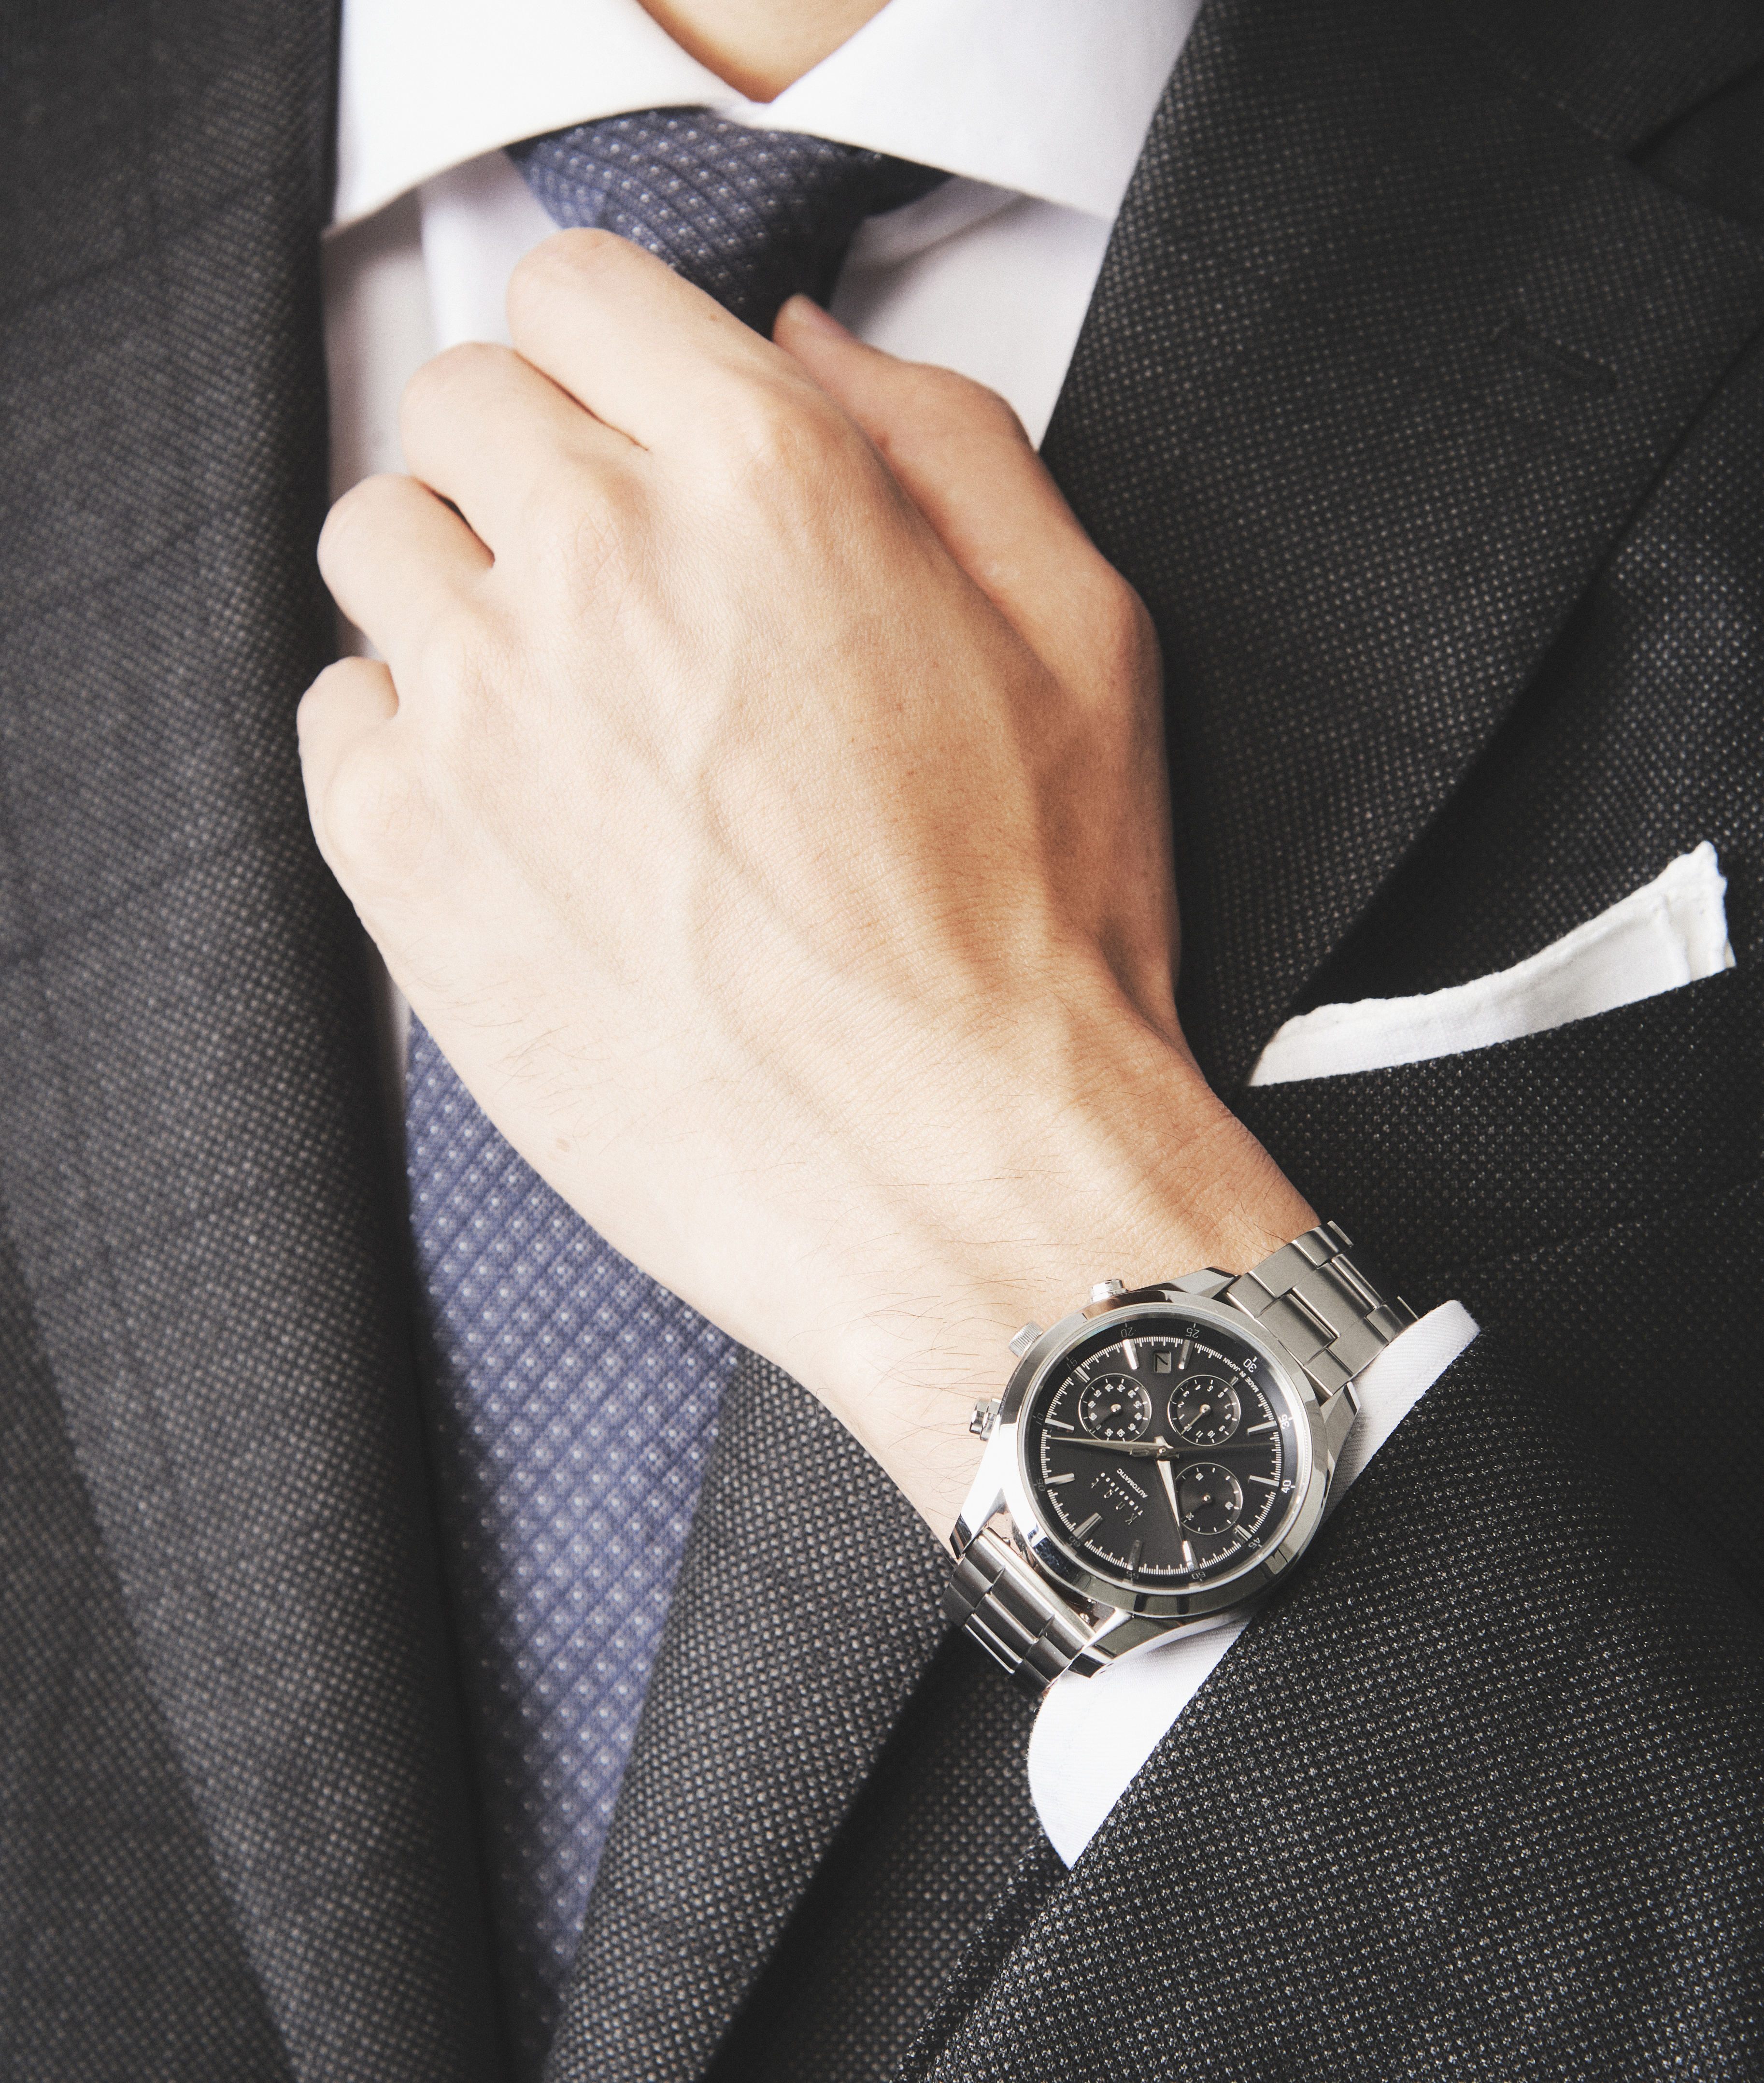 ビジネスにふさわしい腕時計とは？スーツを引き立てるポイントを解説